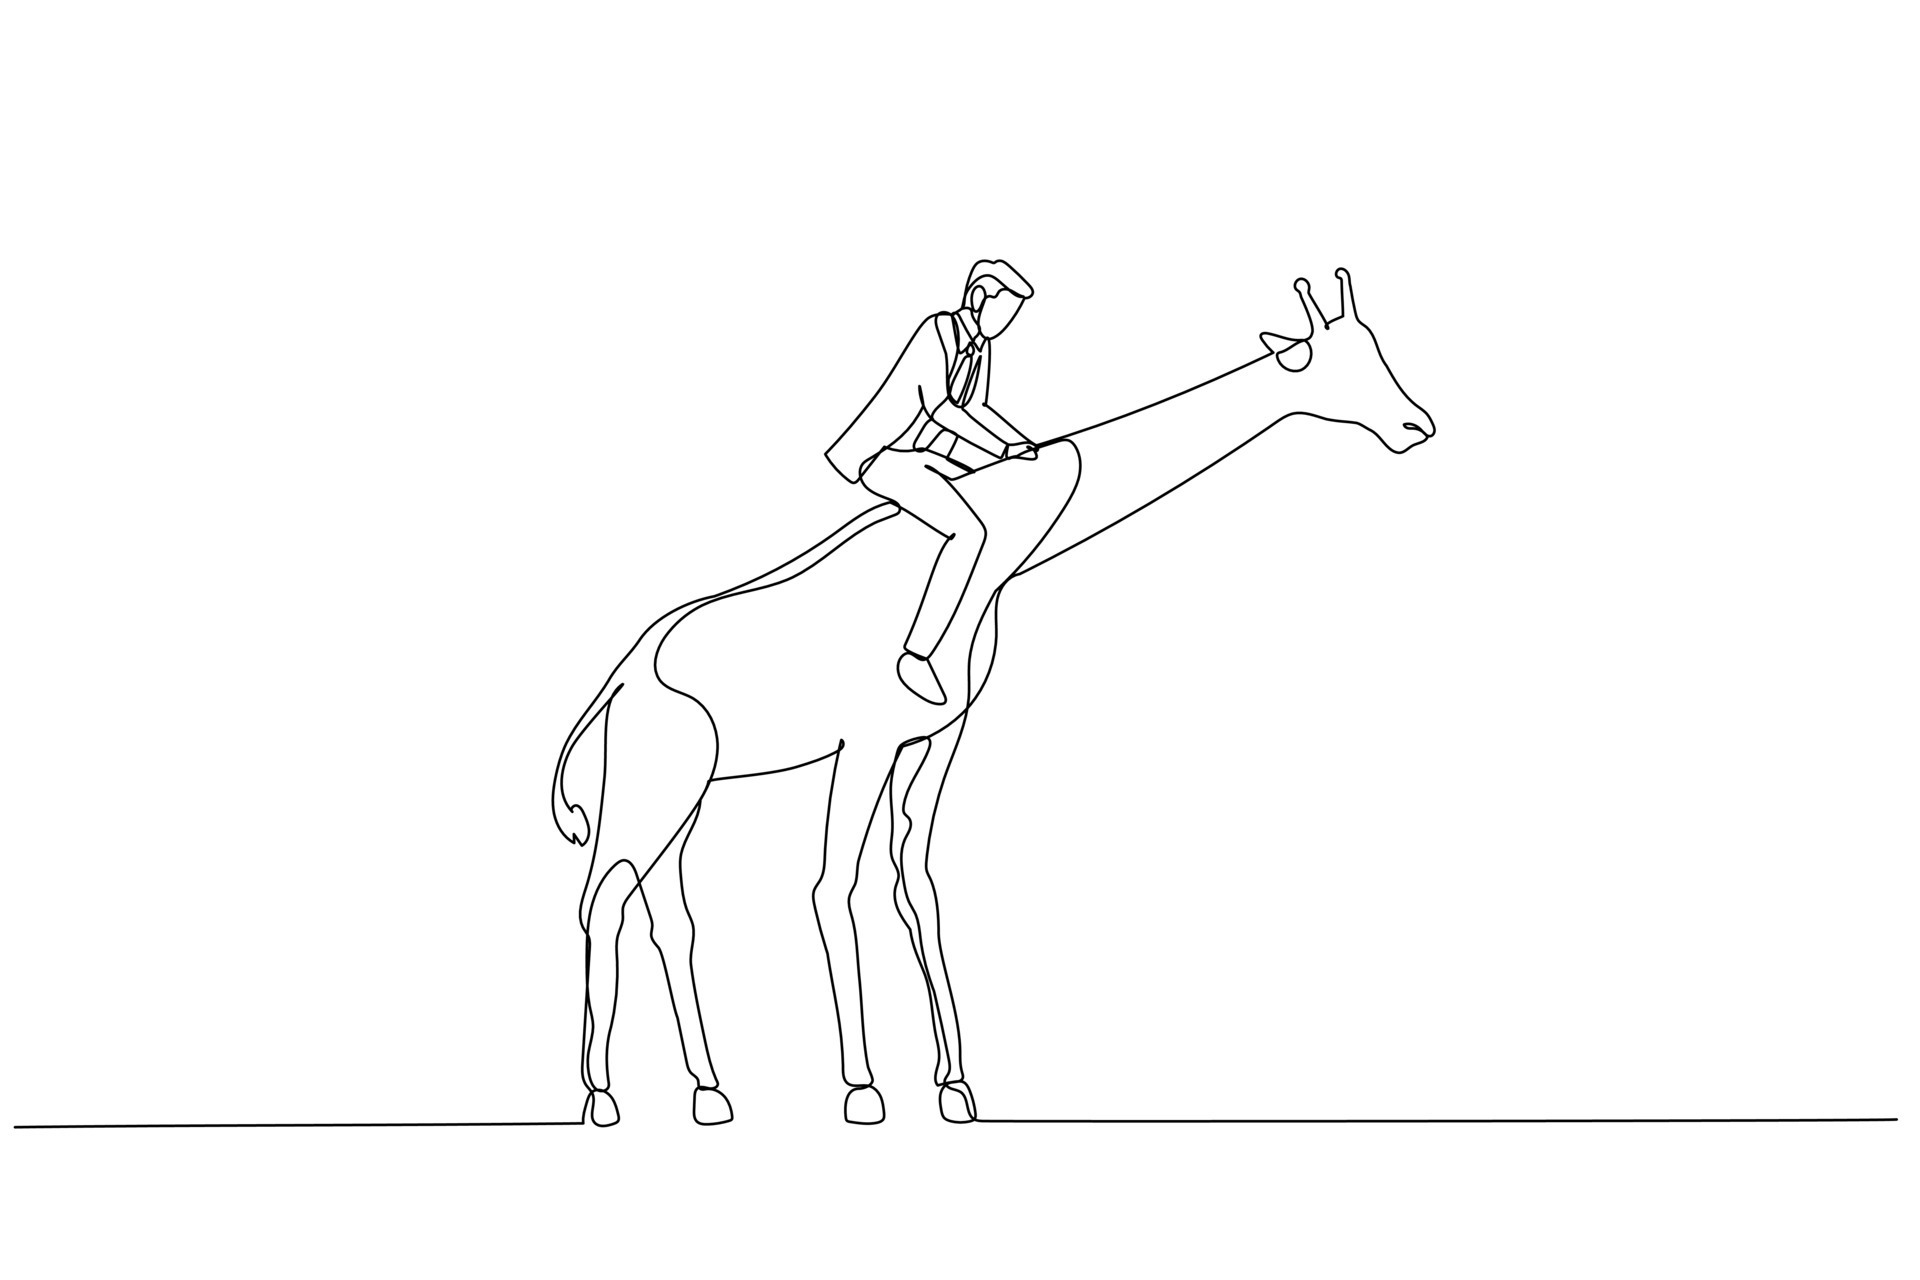 contínua uma linha desenho jovem cavalgando na tela do smartphone. cavalo  de corrida com jóquei. esporte equestre. jóquei montando cavalo pulando.  ilustração gráfica de vetor de desenho de linha única 23659111 Vetor no  Vecteezy